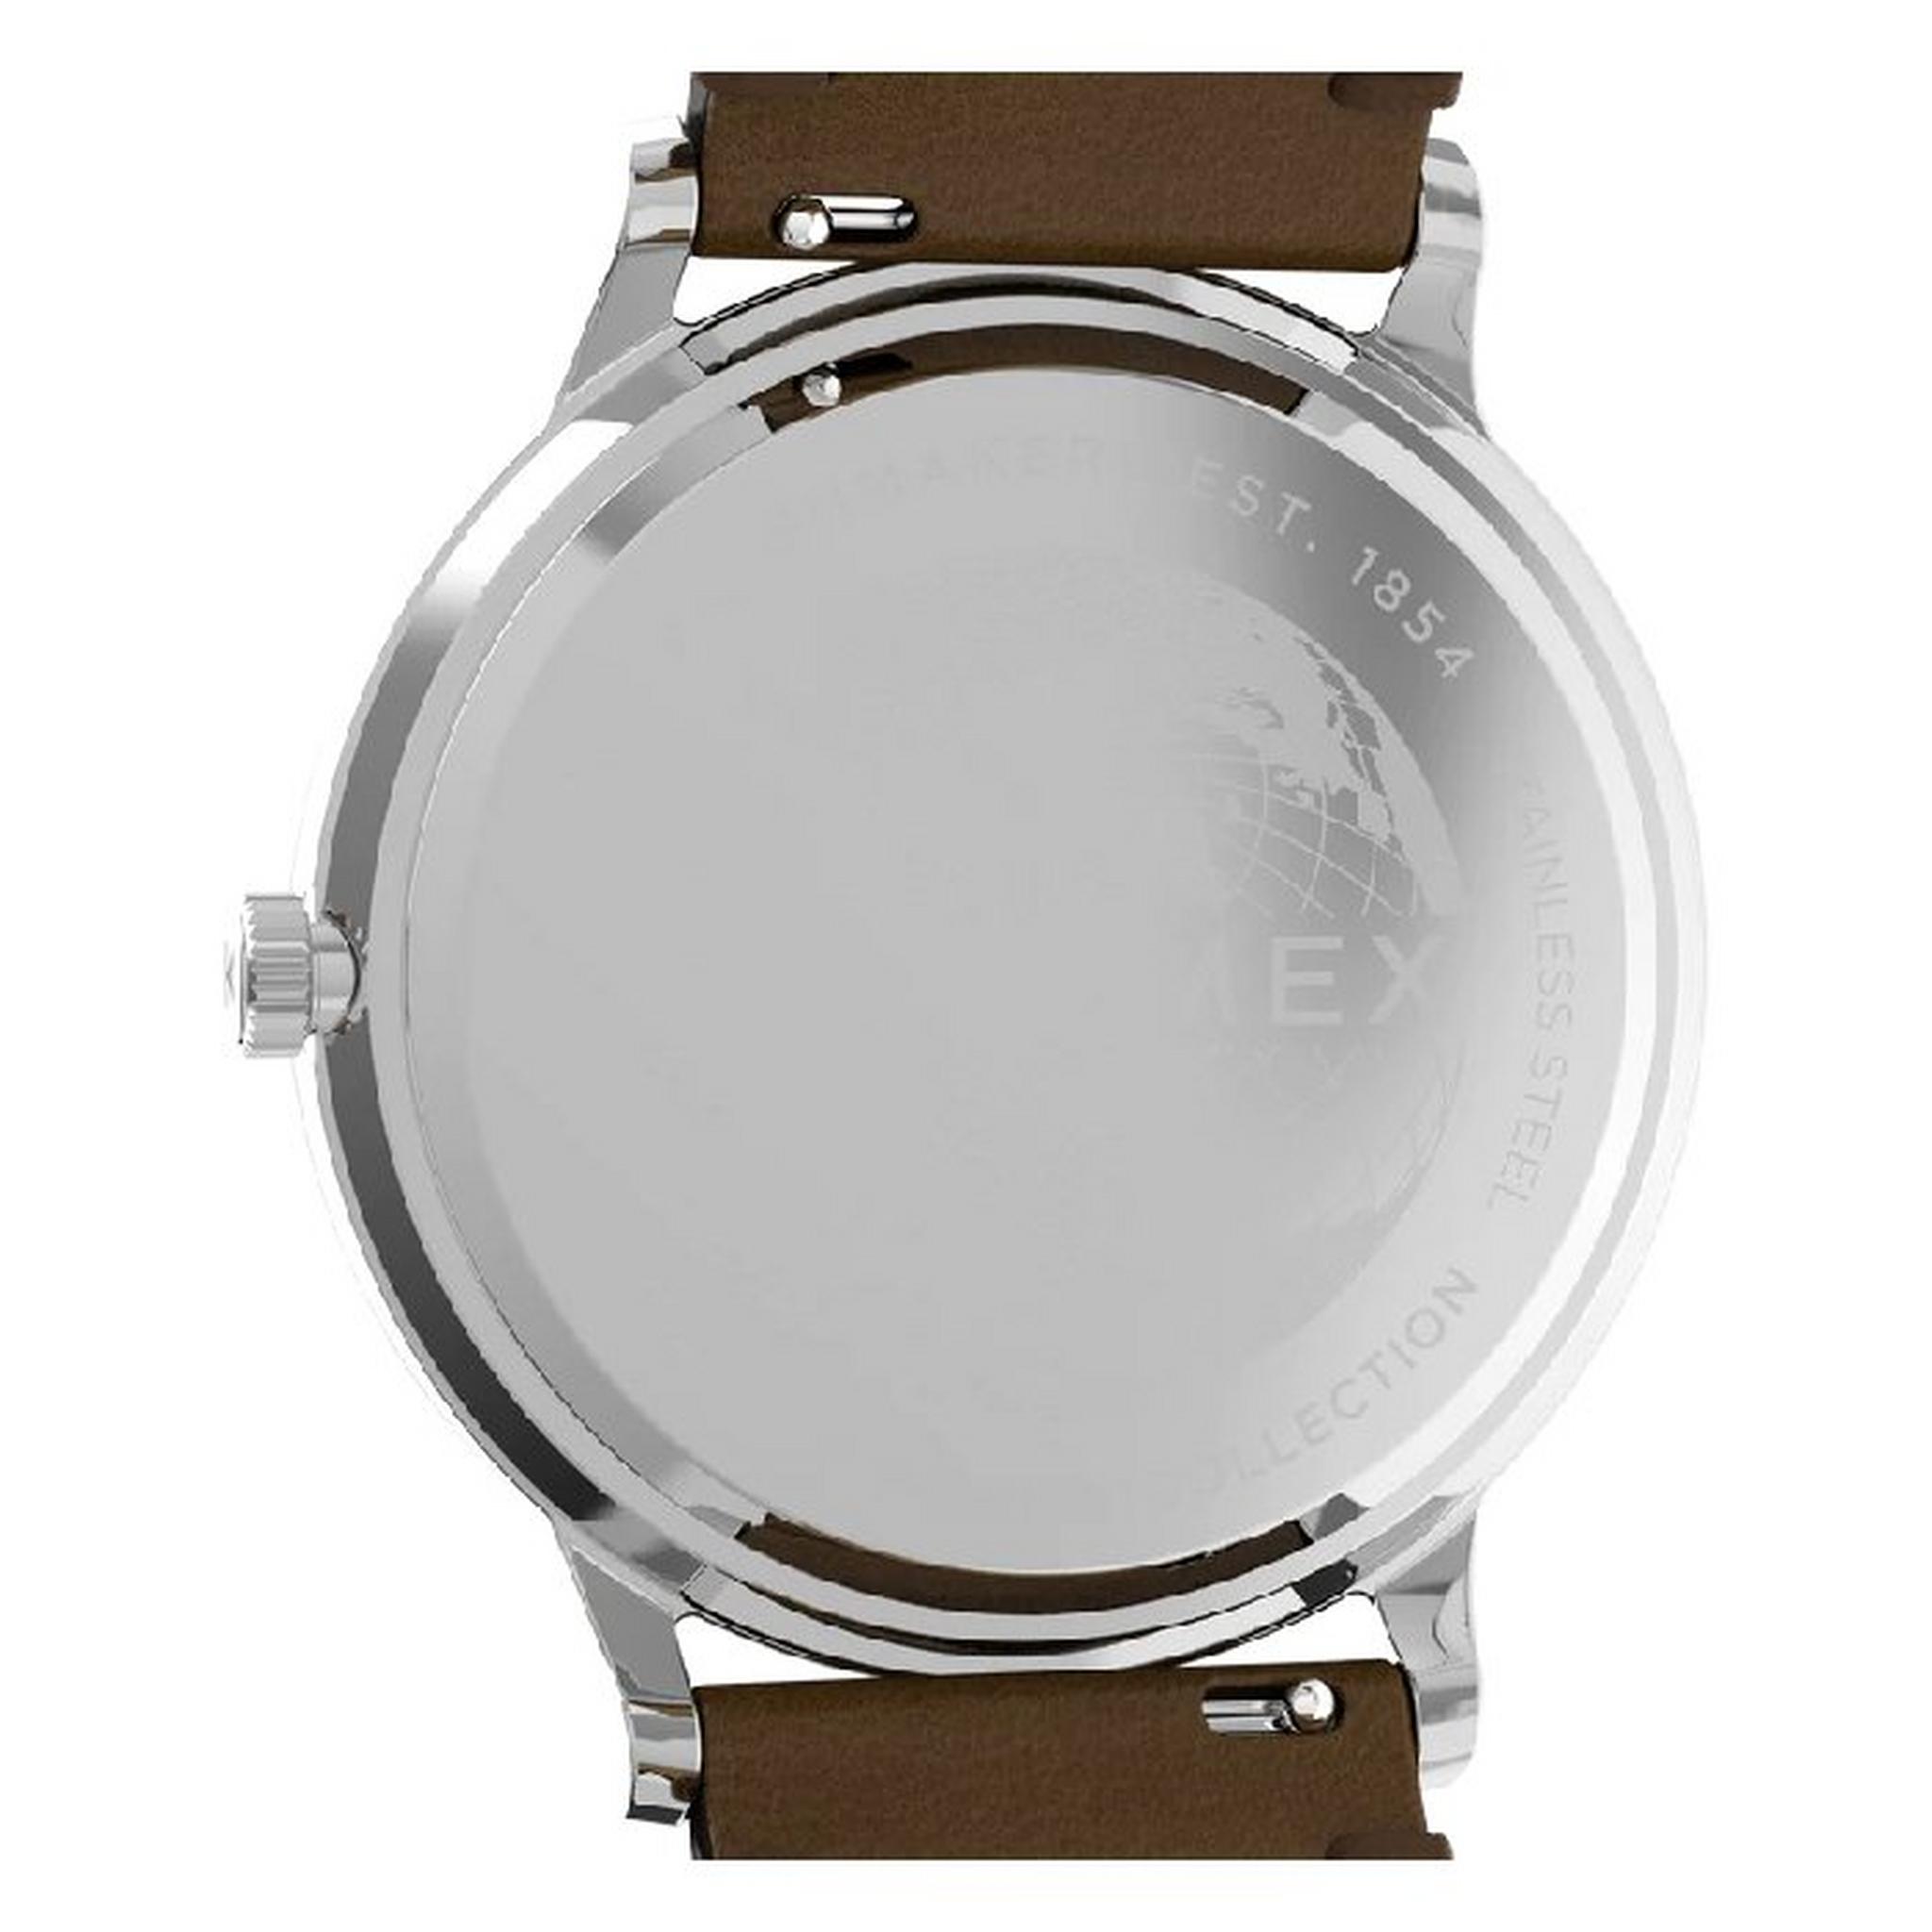 ساعة ووتربيري كلاسيك للرجال من تايمكس، أنالوج، 40 مم، سوار من الجلد، TW2W14900VM – بني